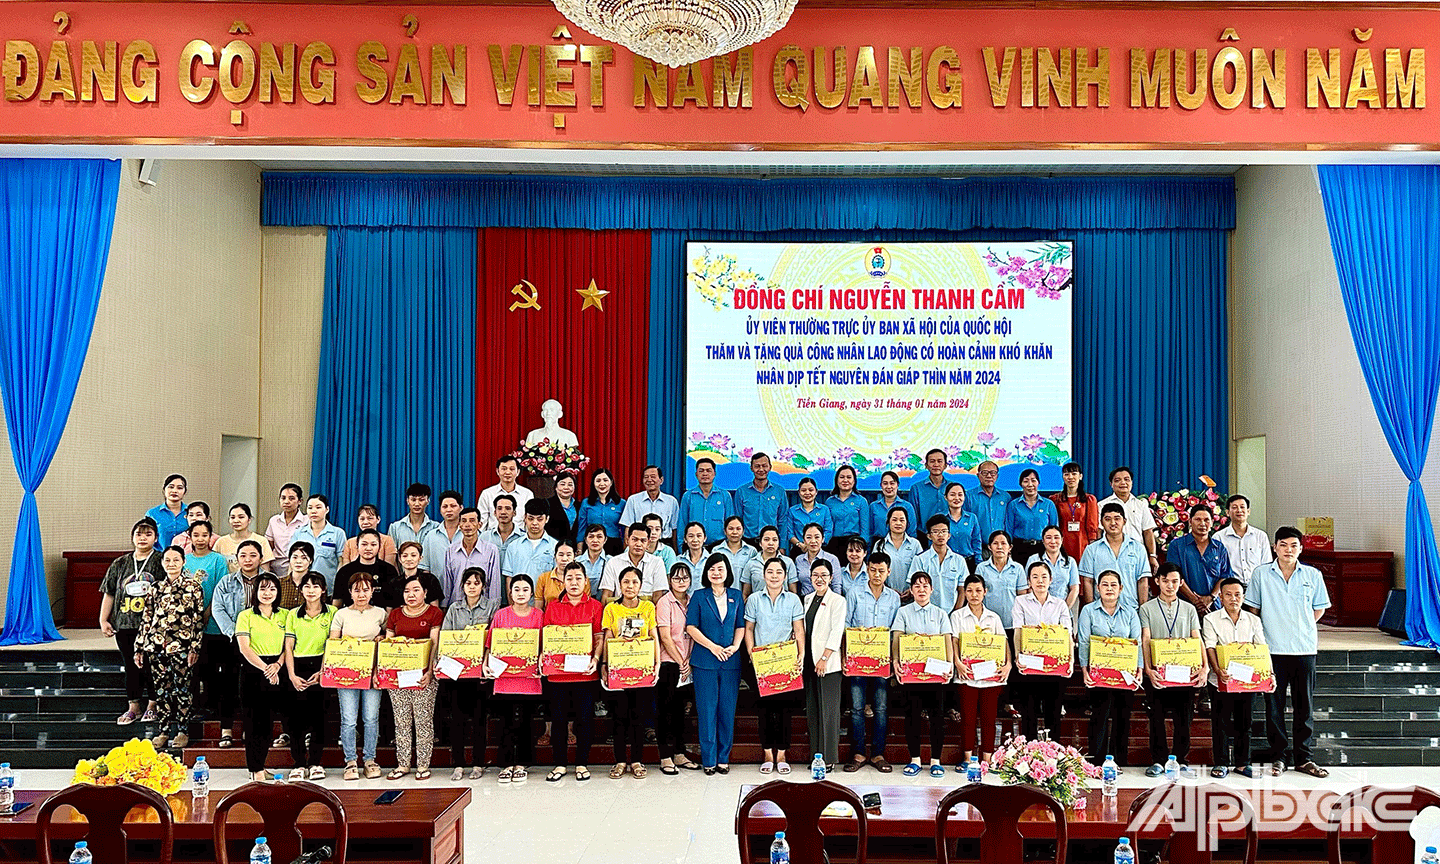 Đồng chí Nguyễn Thanh Cầm, Ủy viên Thường trực Uỷ ban xã hội của Quốc hội trao quà tết cho công nhân